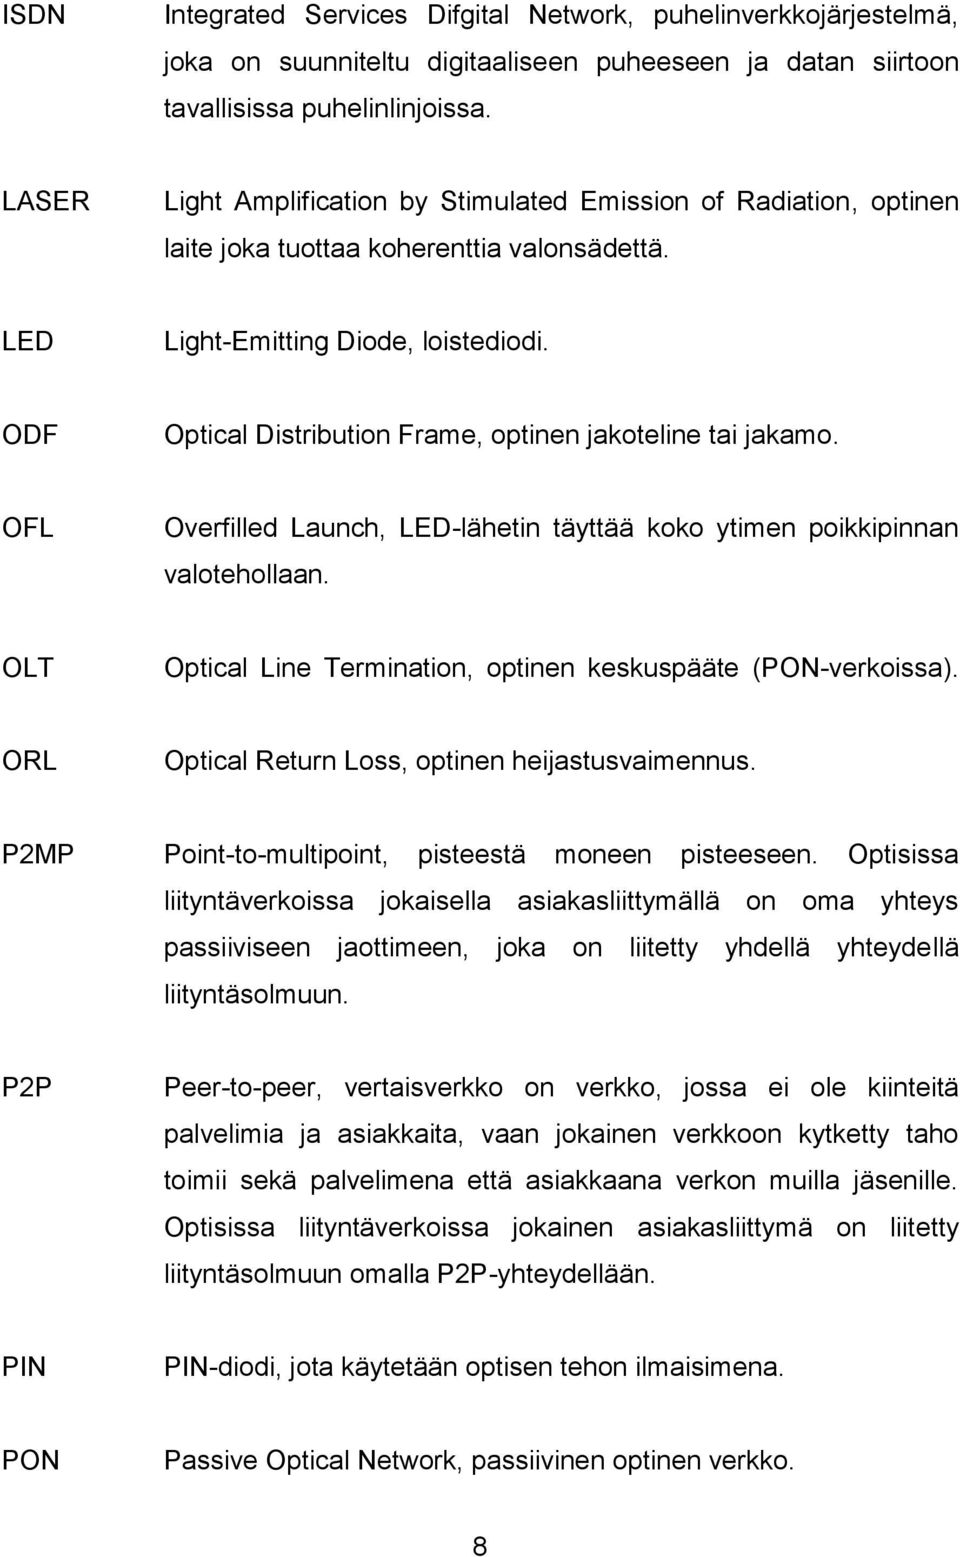 ODF Optical Distribution Frame, optinen jakoteline tai jakamo. OFL Overfilled Launch, LED-lähetin täyttää koko ytimen poikkipinnan valotehollaan.